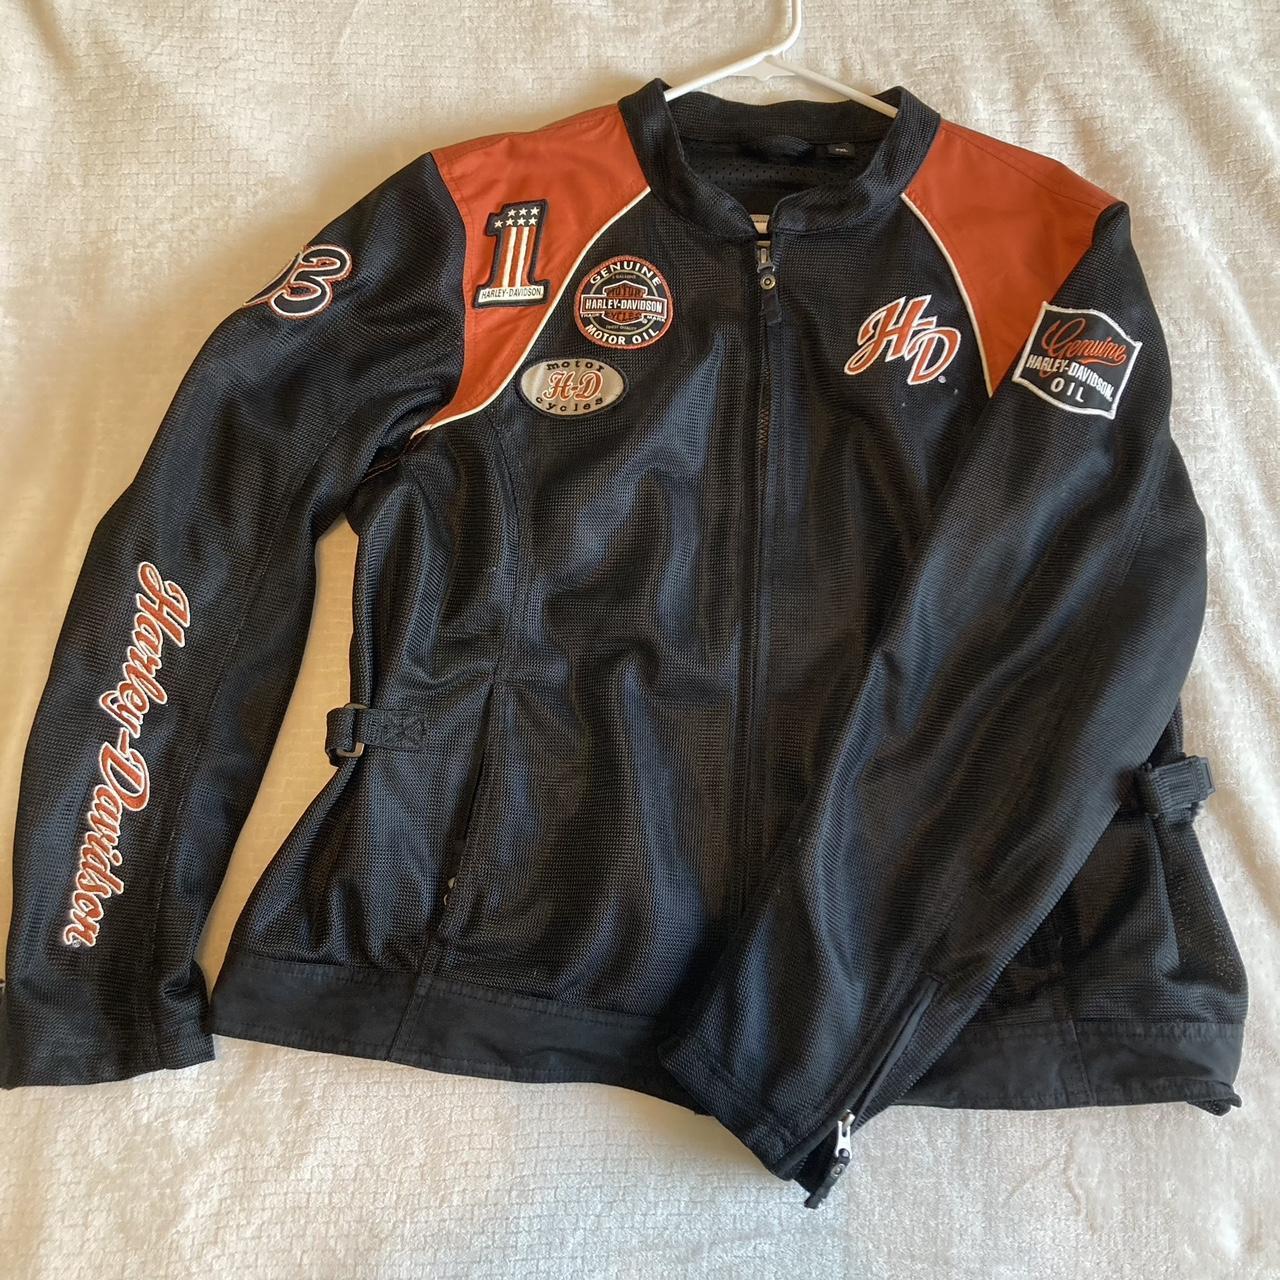 Harley Davidson riding jacket in size ladies 2XL!... - Depop